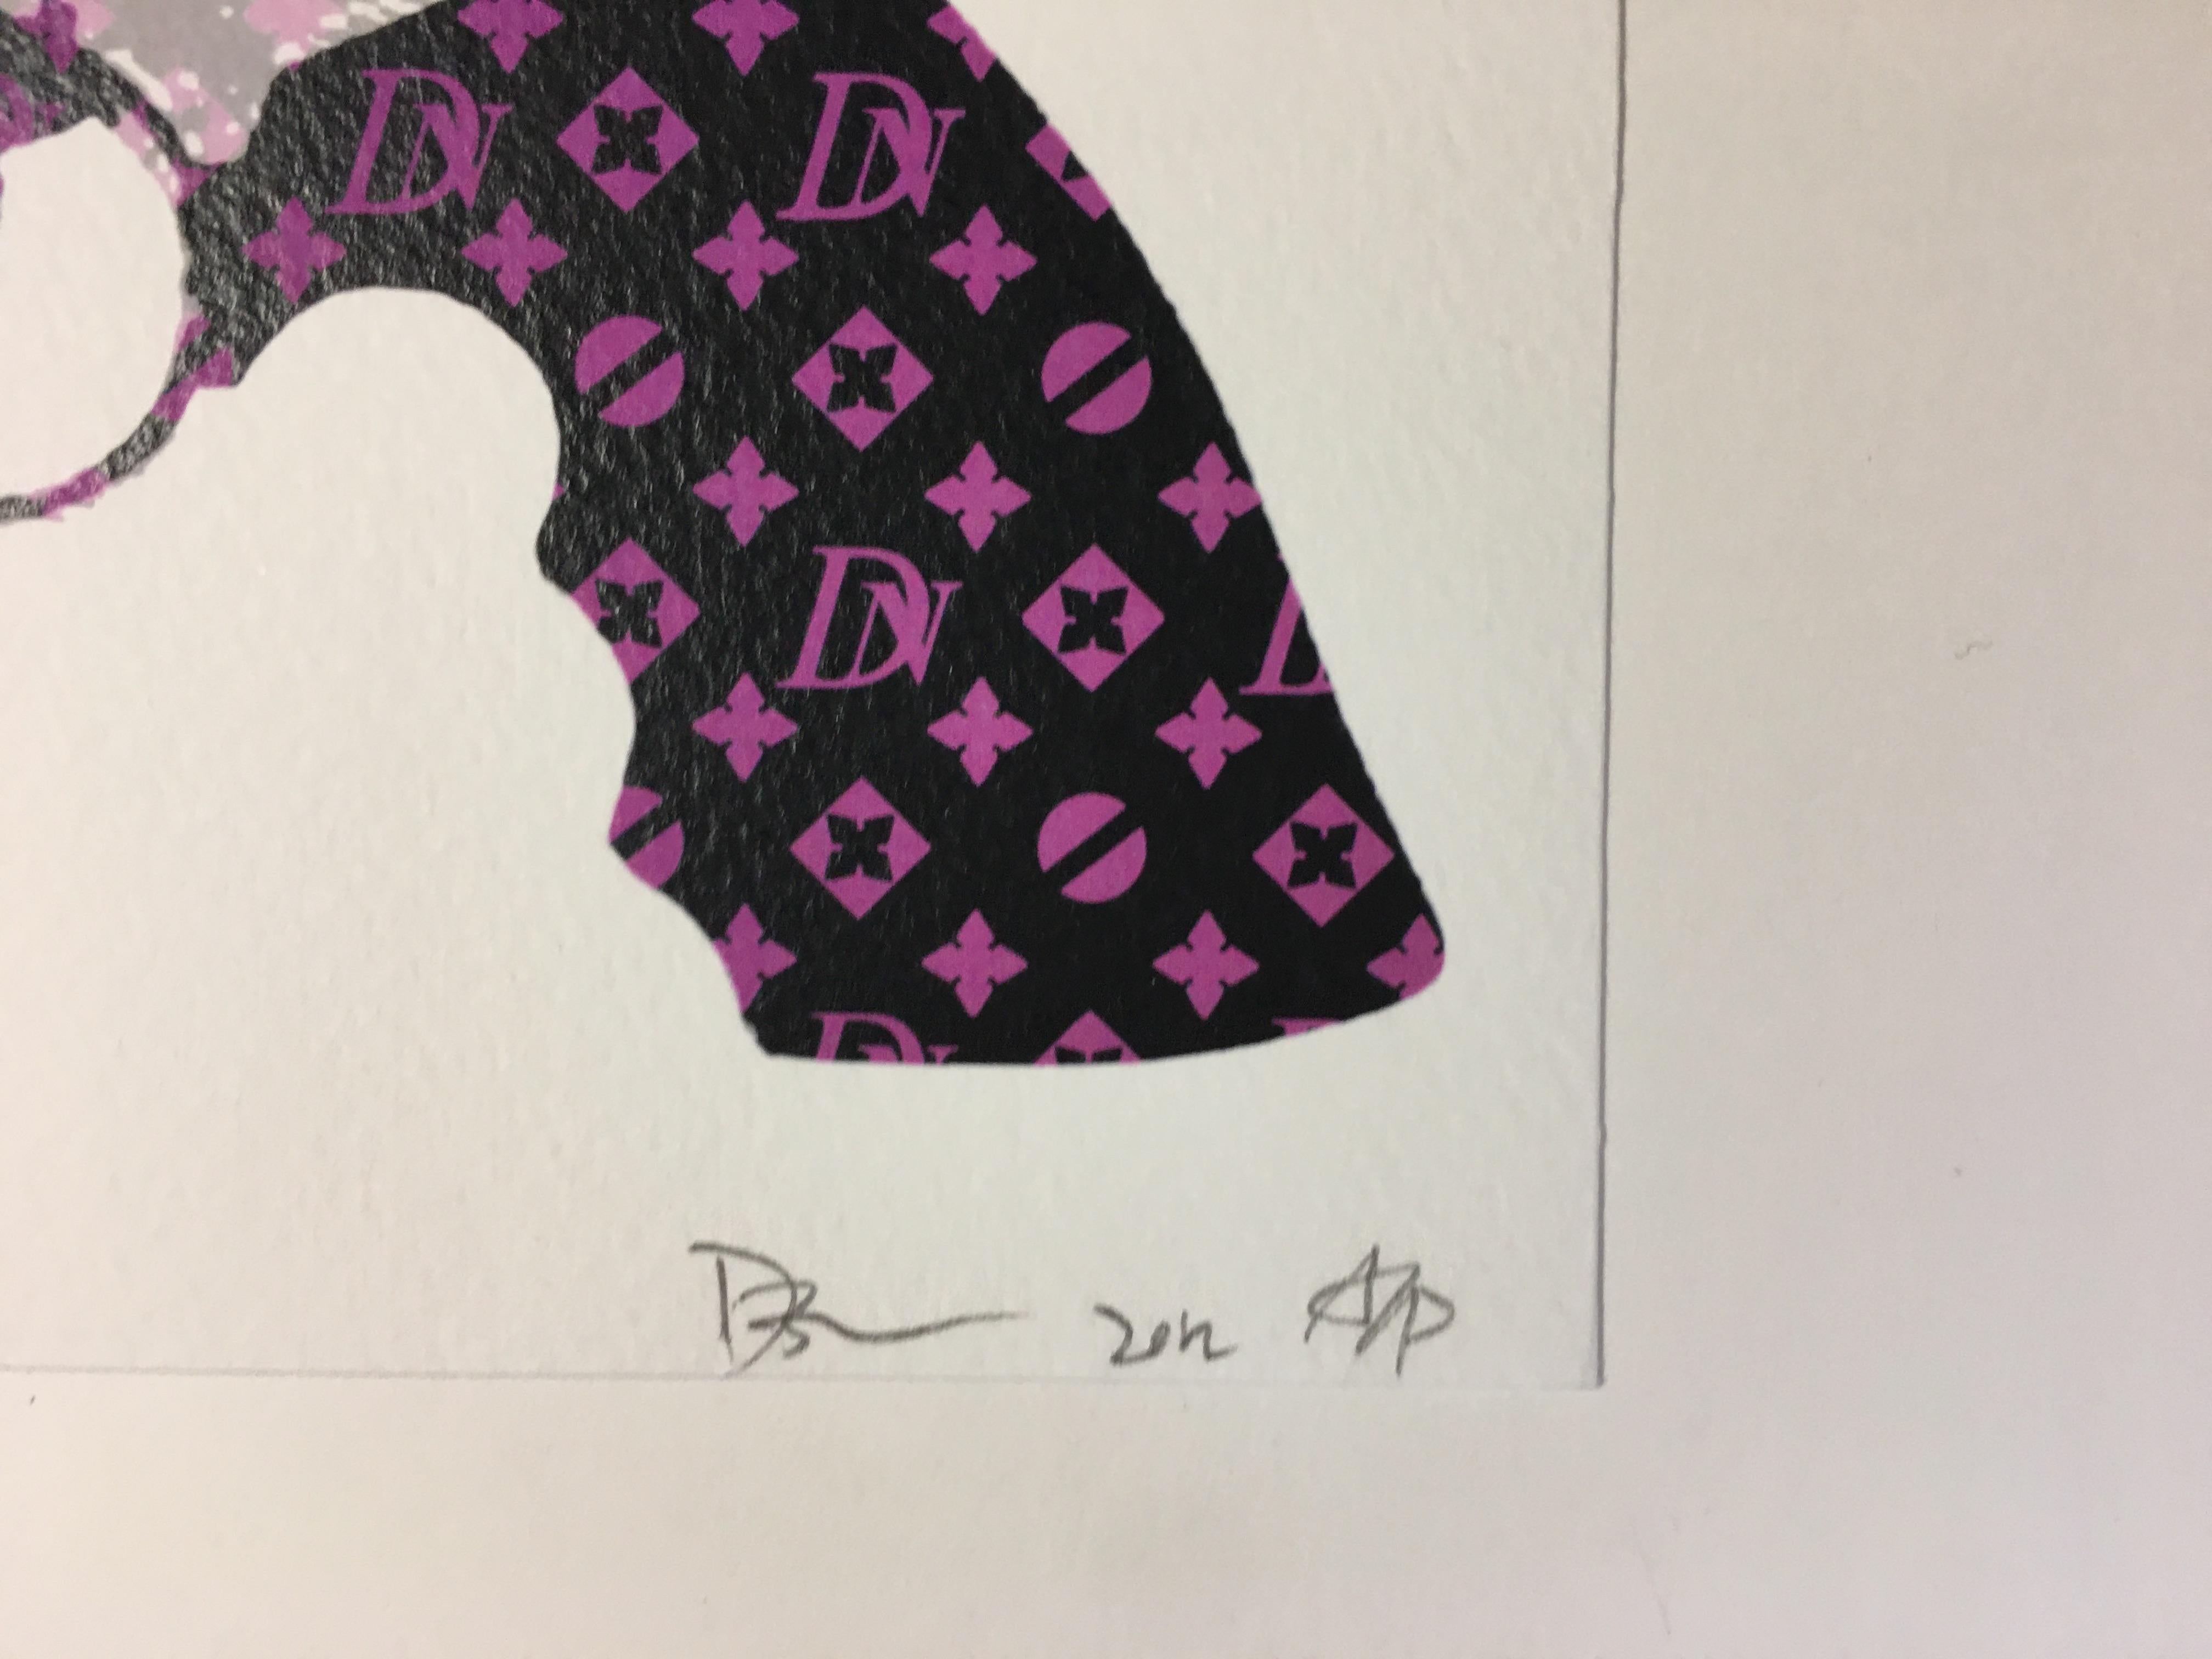 Death NYC -  Gun DN purple - 2012
Sérigraphie signée, numérotée et datée au crayon
2 certificats de l'artiste
21x15
prix : 49 euro
